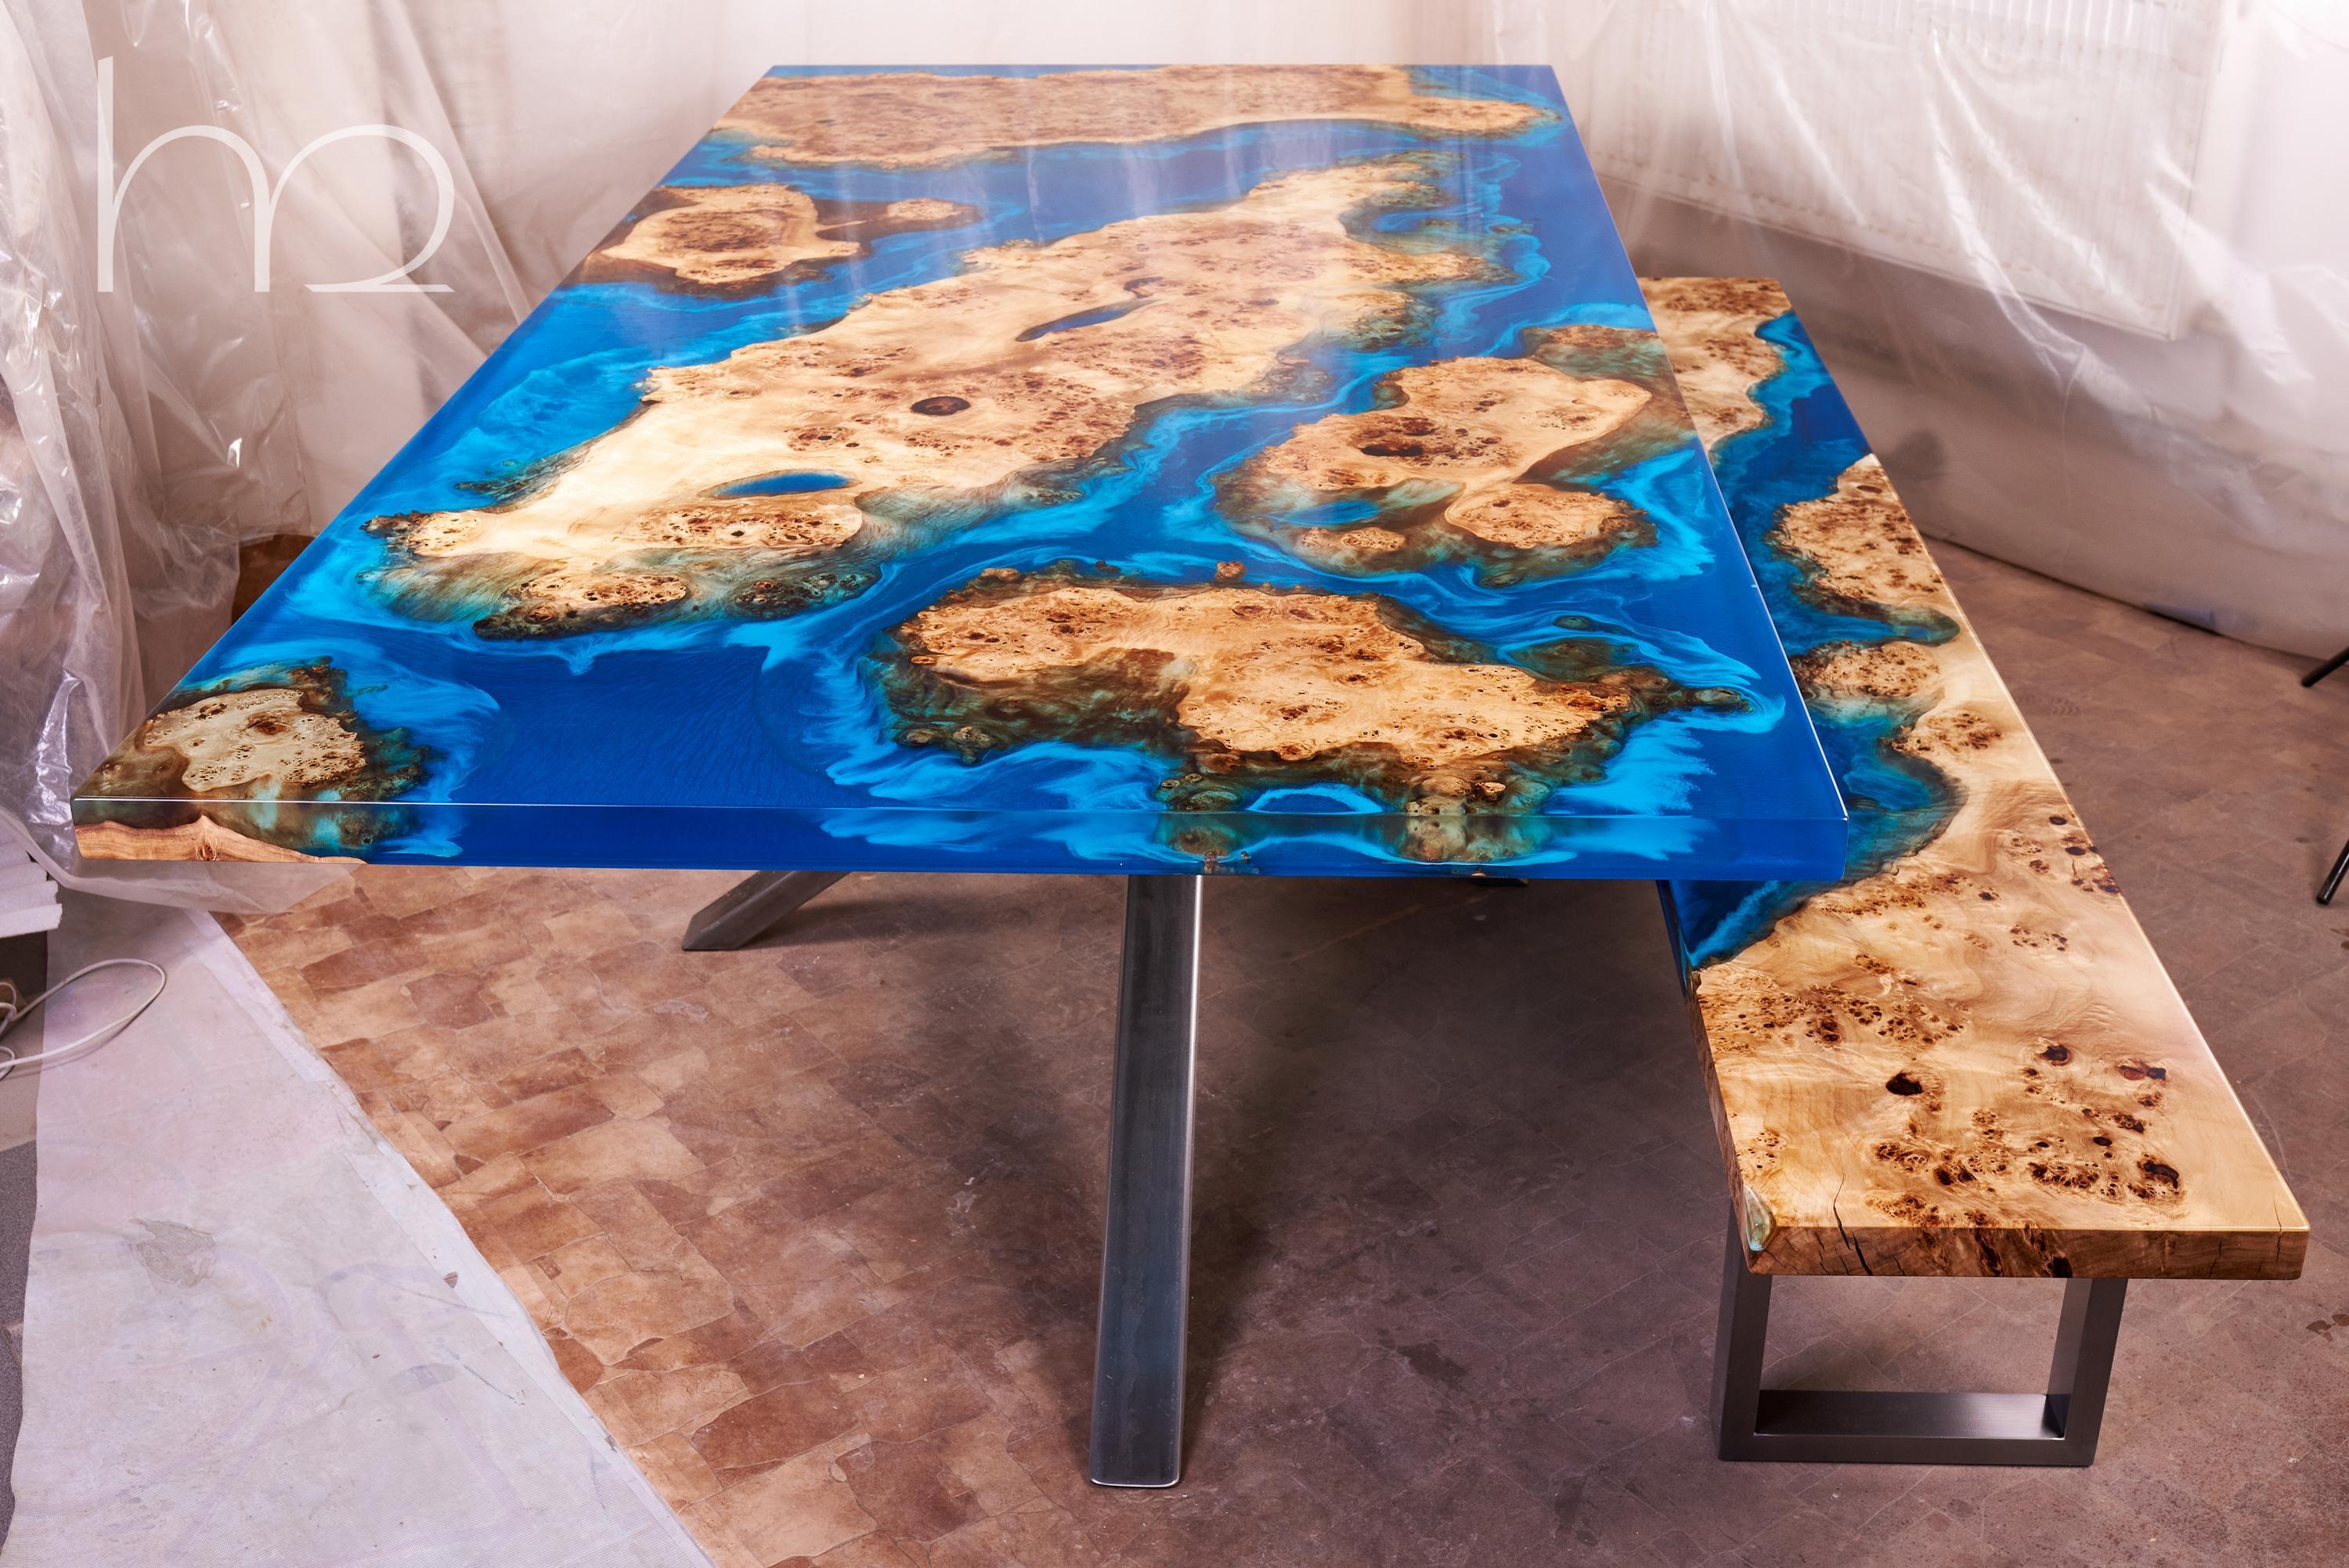 Der Tisch ist aus prächtigen alten Wurzelholzplatten gefertigt. Ihre Textur wurde im Laufe von Hunderten von Jahren so geformt, wie sie heute aussieht. Als das Holz getrocknet war, beschlossen wir, es in dieser Form zu verewigen. Wie viele